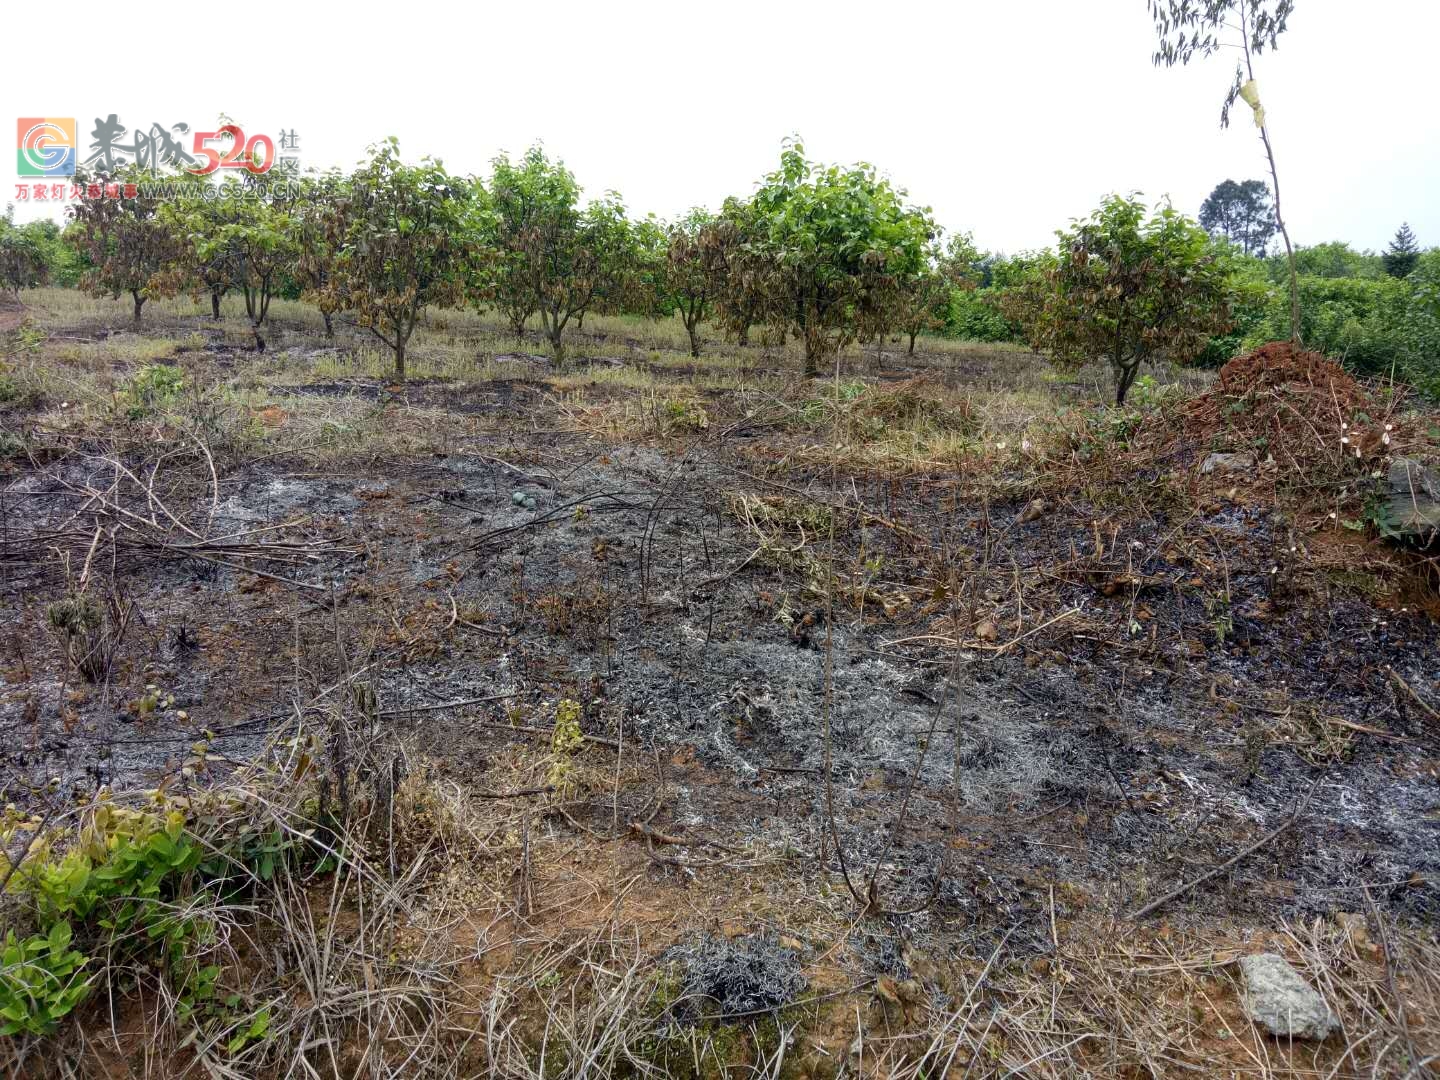 昨天下午三点钟左右 ,英家洞柿子树全被烧了。594 / 作者:希灵容梅 / 帖子ID:260604